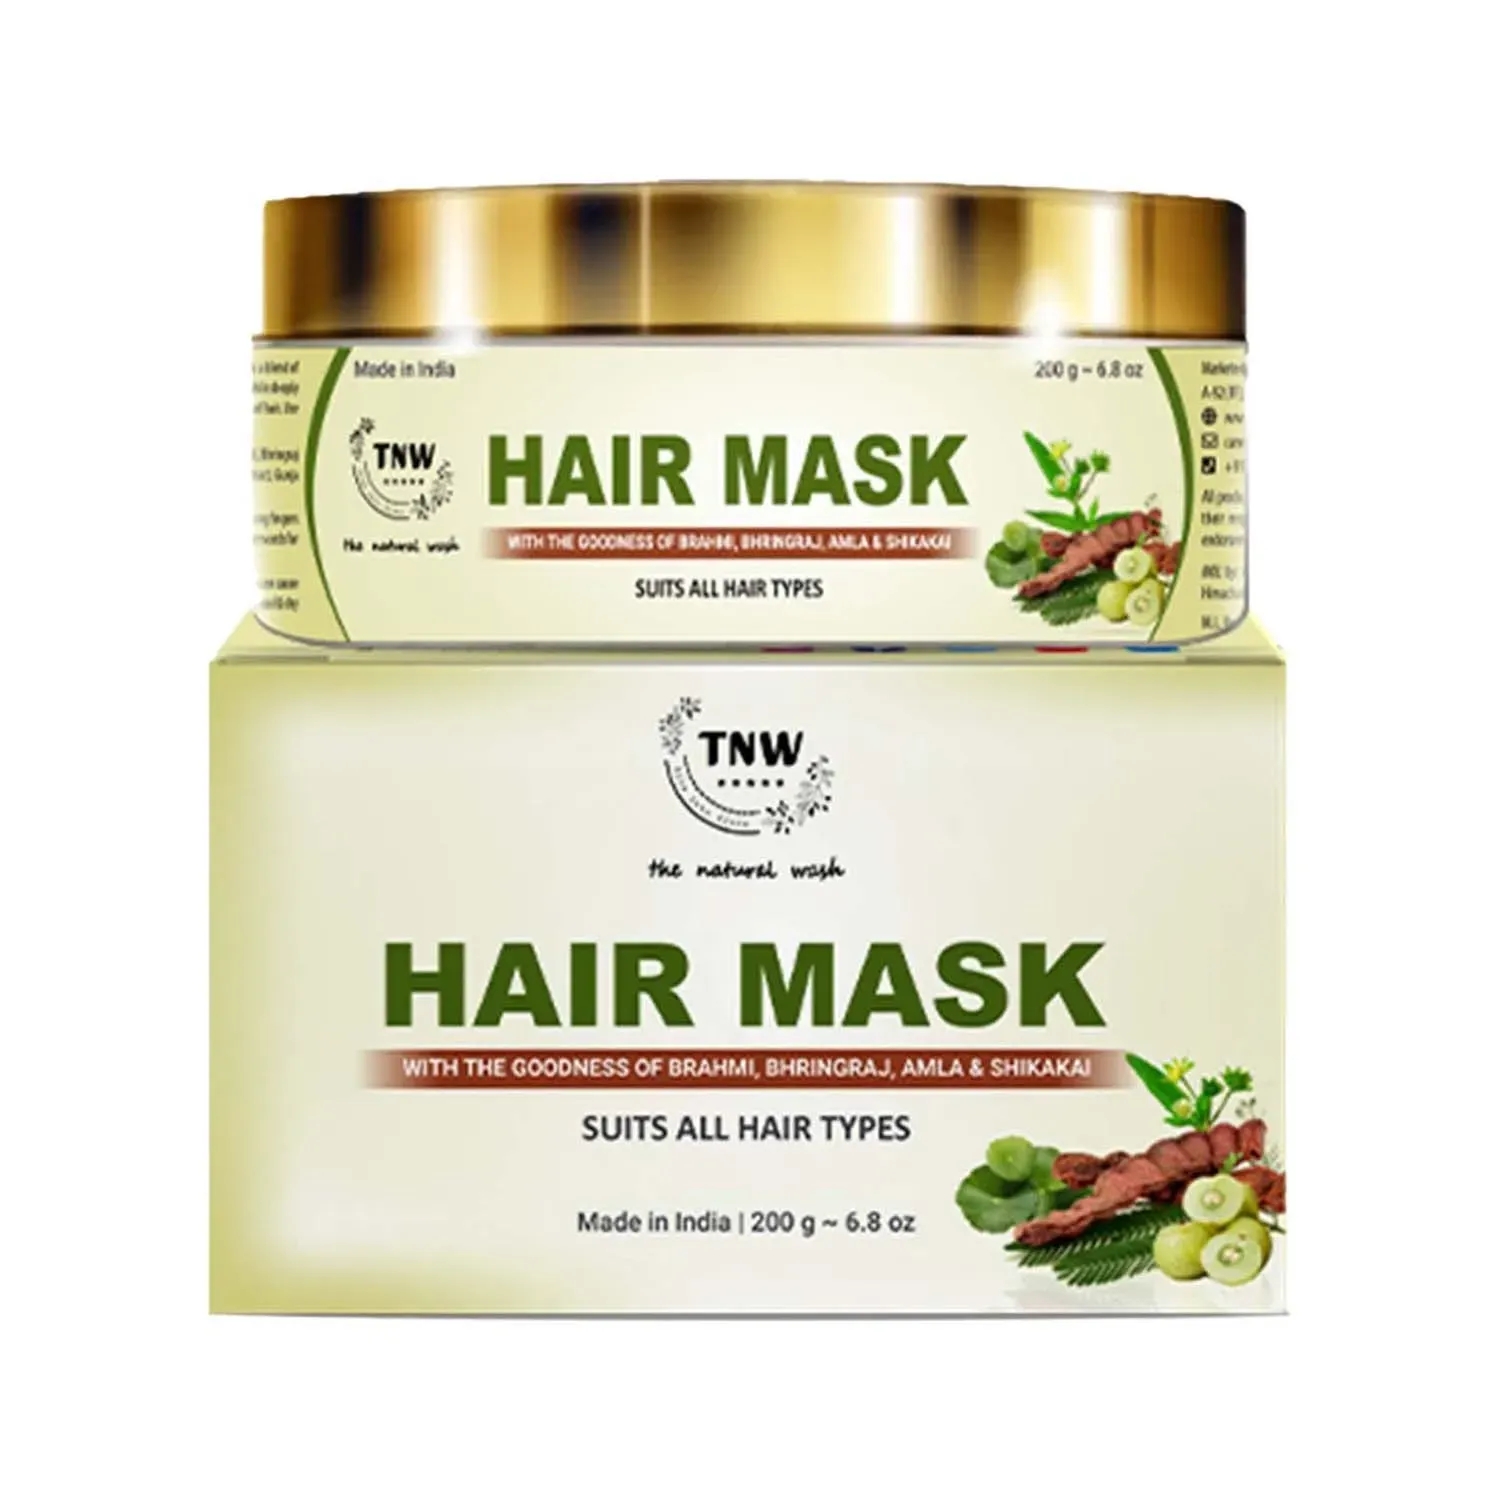 TNW The Natural Wash | TNW The Natural Wash Hair Mask with Amla Bhringraj & Shikakai (200g)